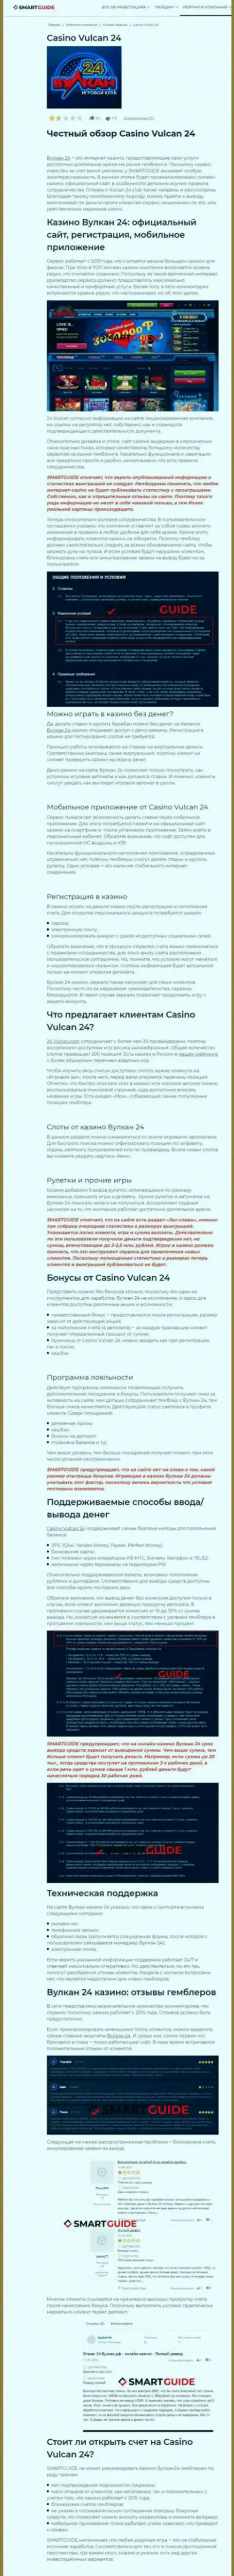 Wulkan24 - это компания, которая зарабатывает на грабеже депозитов реальных клиентов (обзор деяний)